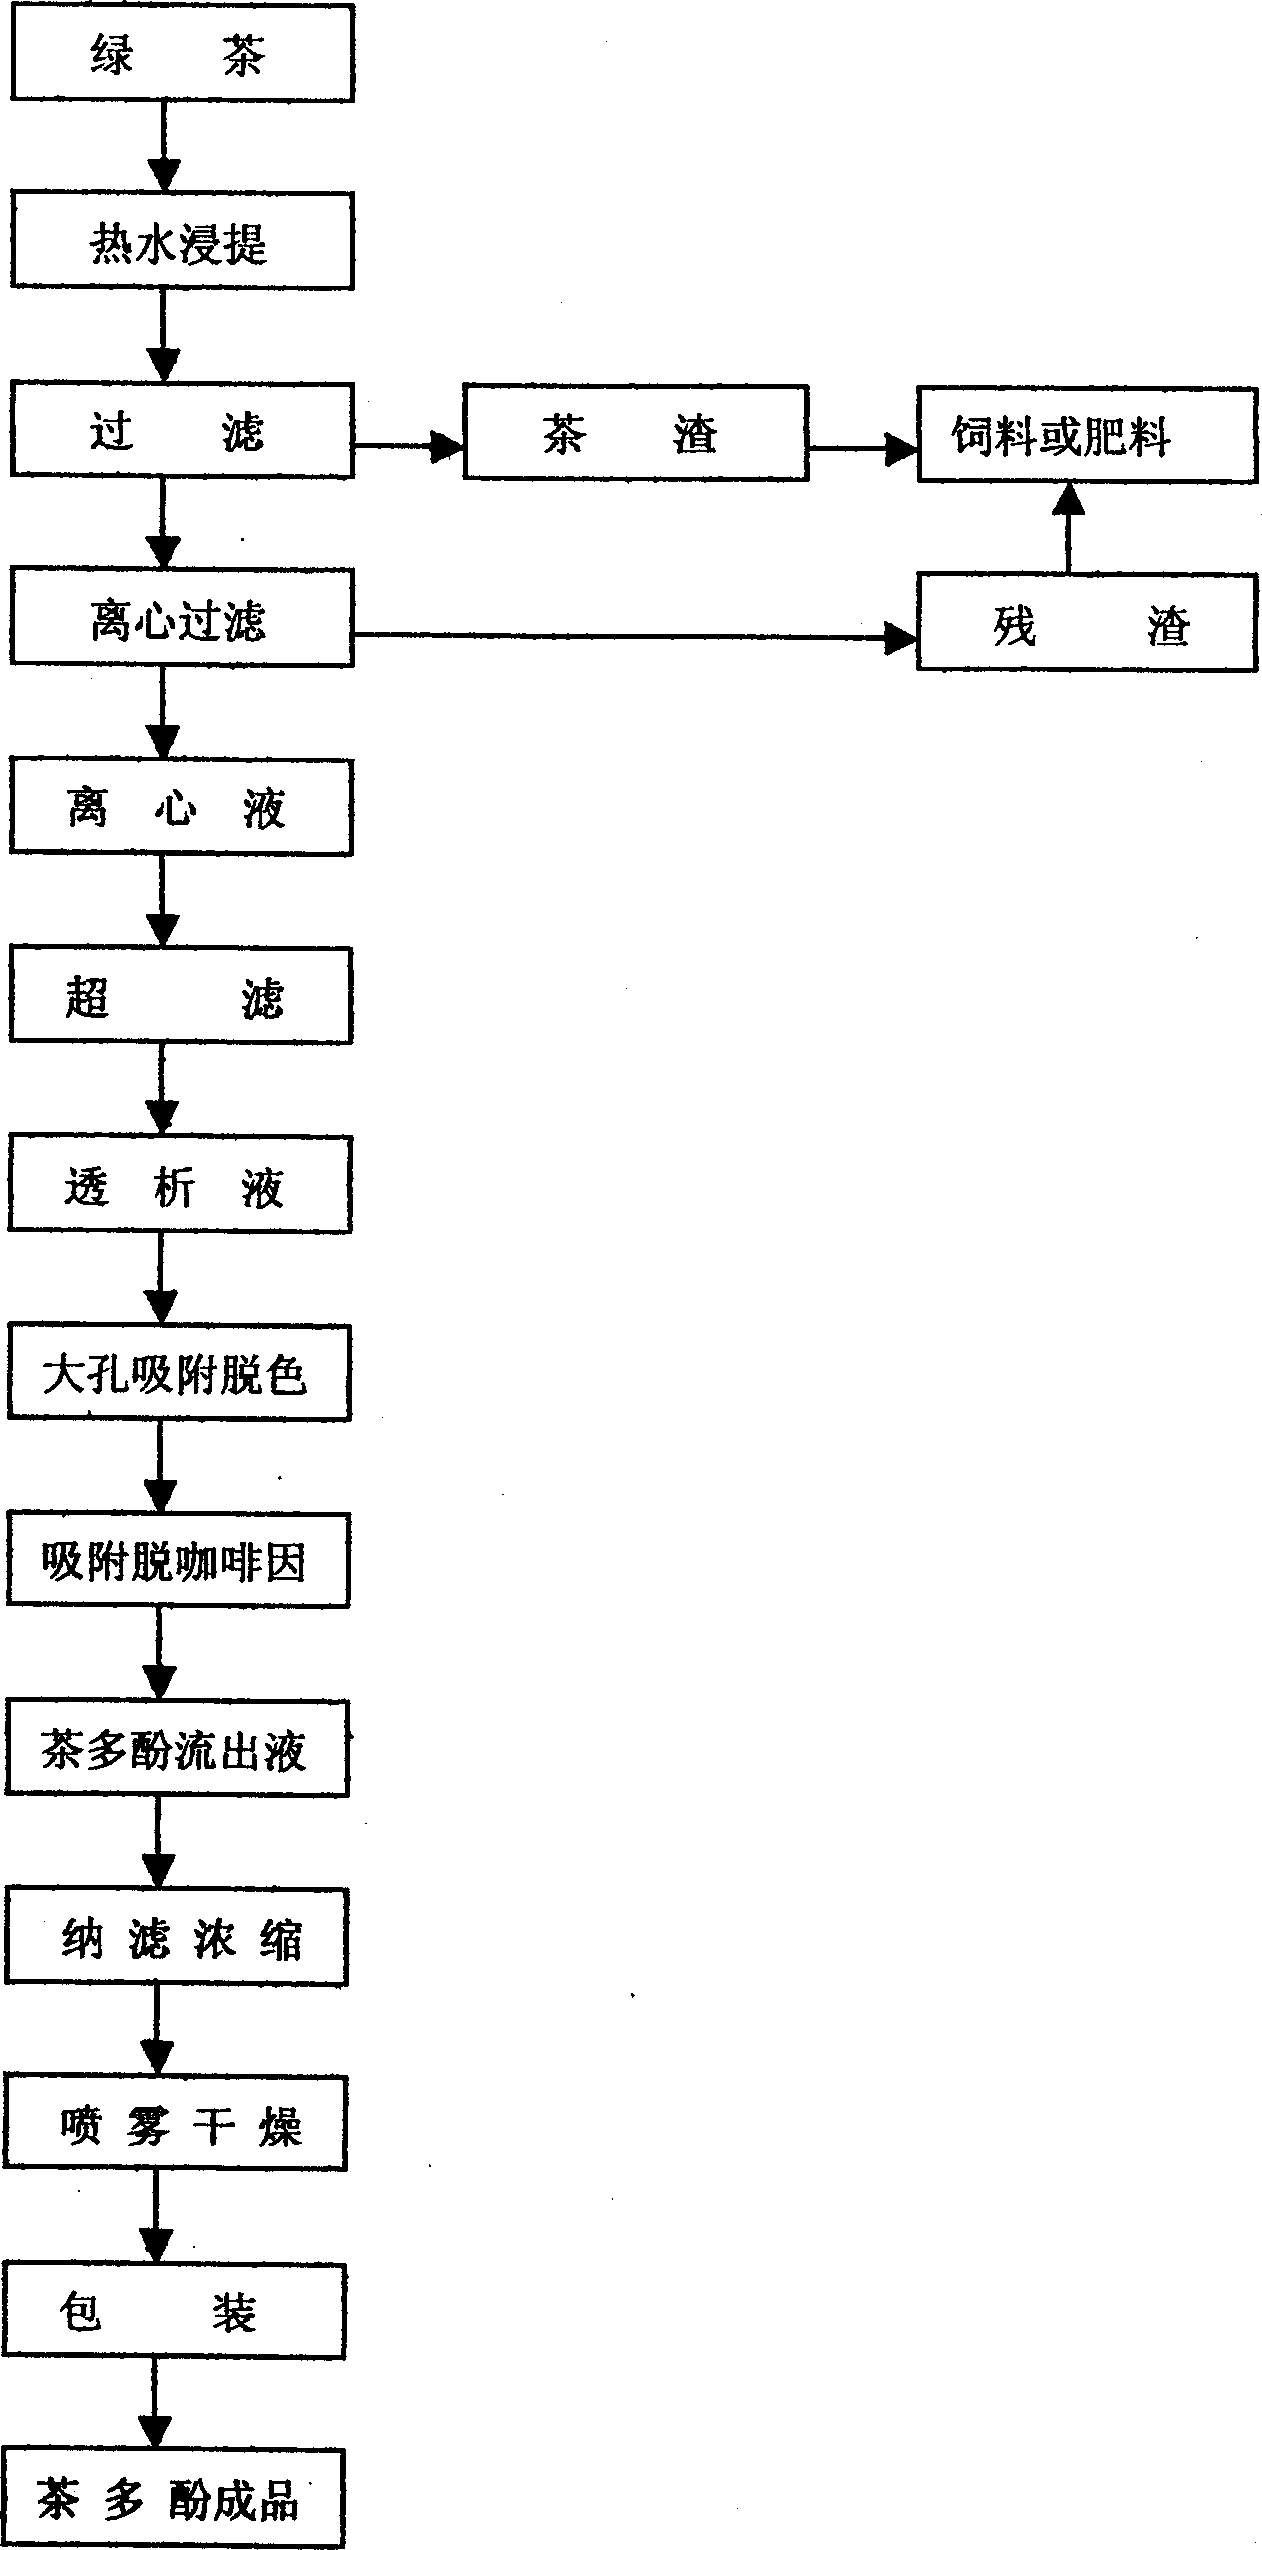 Method of preparing tea polyphenol by resin adsorption method